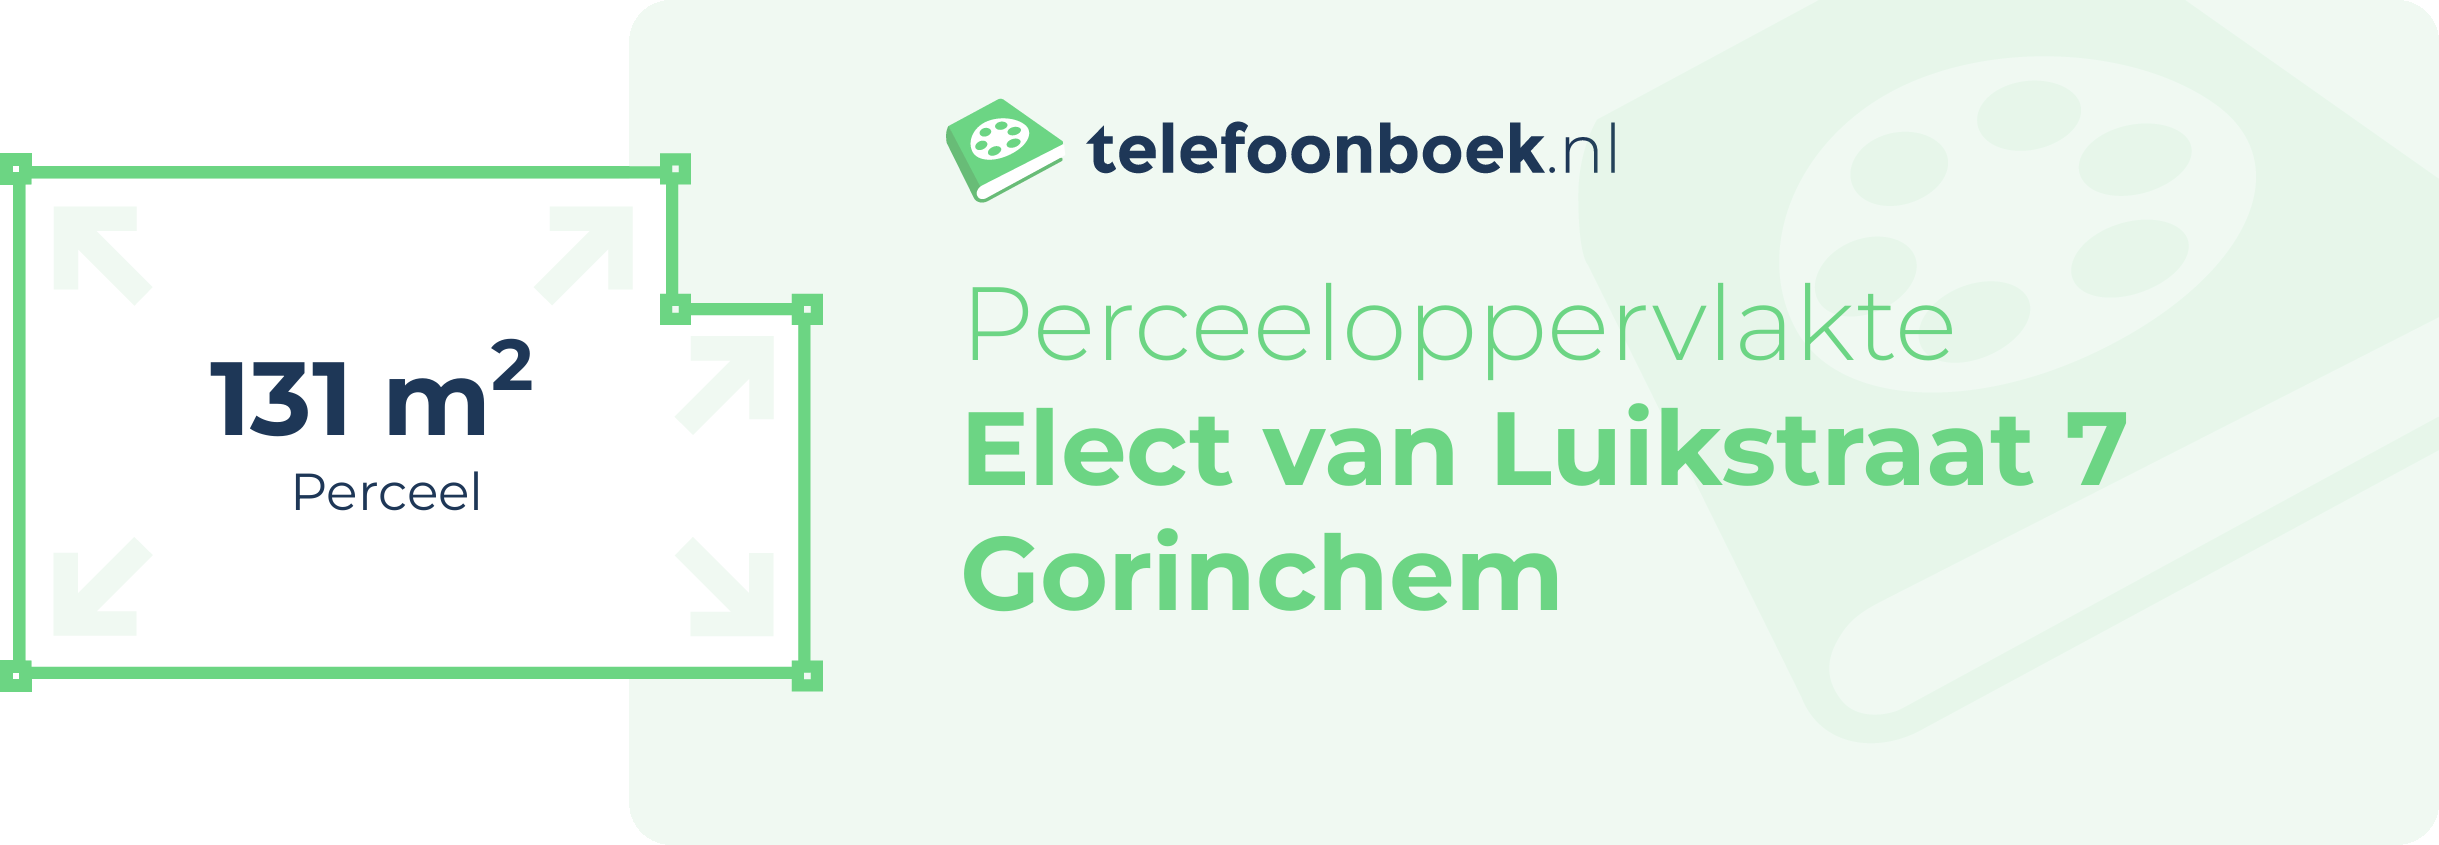 Perceeloppervlakte Elect Van Luikstraat 7 Gorinchem